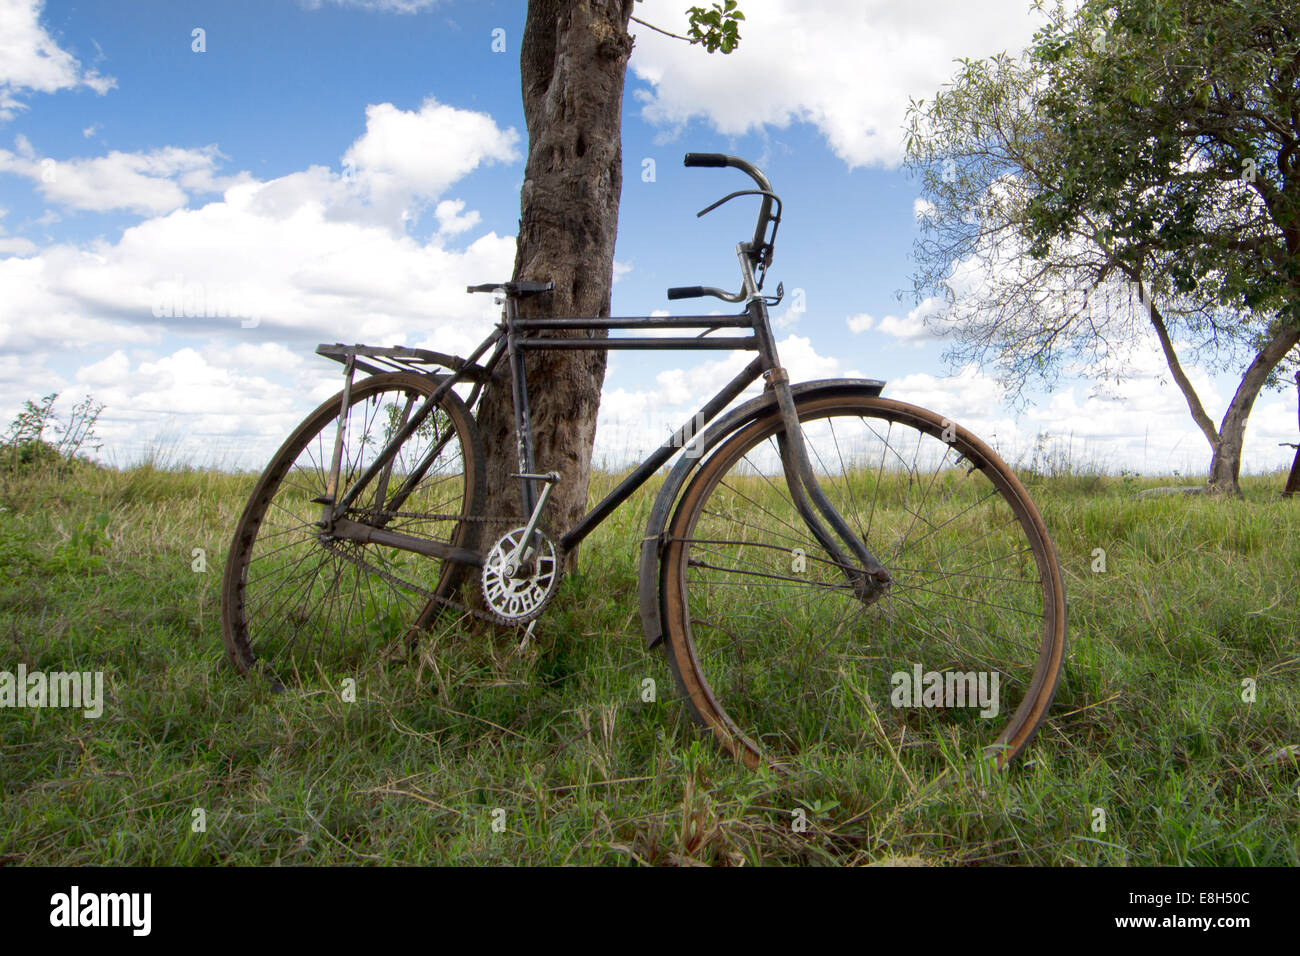 Un vieux vélo utilisé pour le transport dans les zones rurales Zambnia s'appuie contre un arbre sur l'île de Chikuni dans Bangweulu zones humides. Banque D'Images